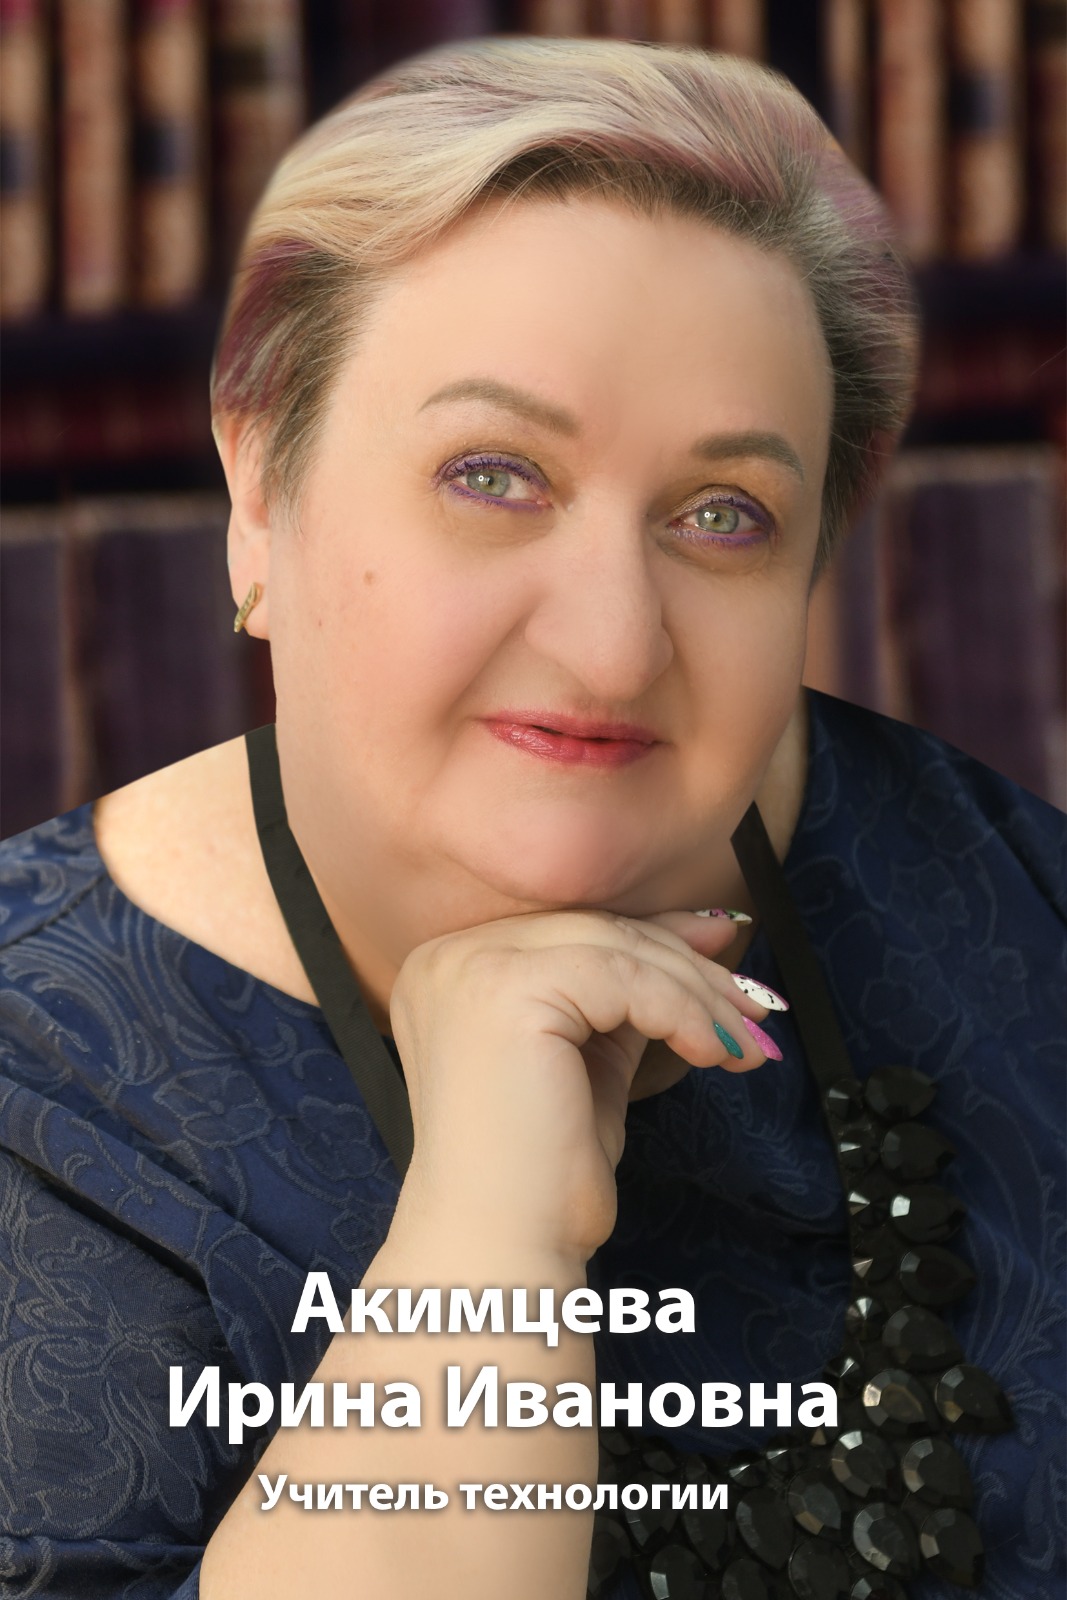 Акимцева Ирина Ивановна.